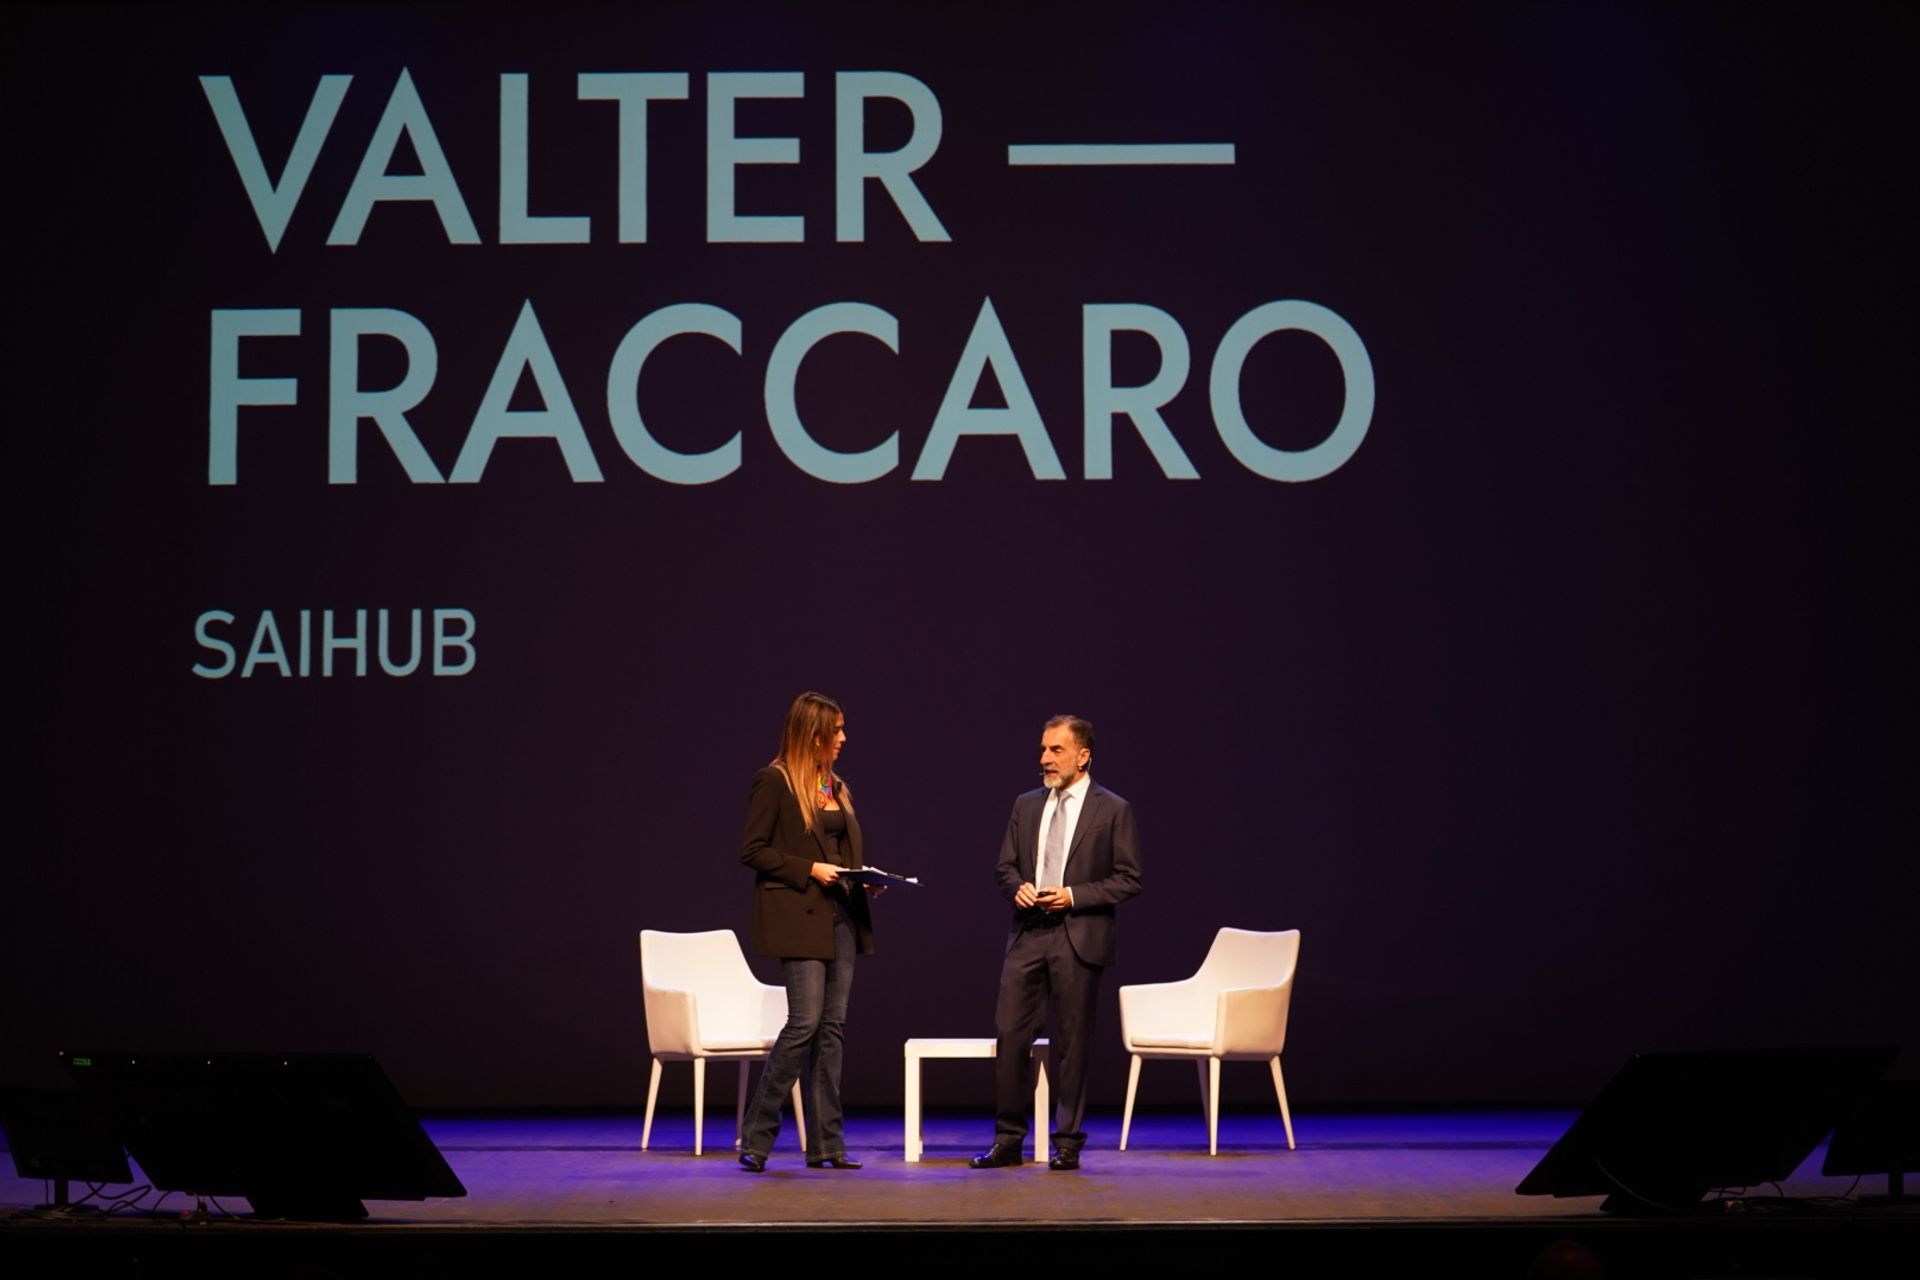 Valter Fraccaro je prezidentom SAIHub, čo je skratka pre Siena Artificial Intelligence Hub, centrum celosvetového významu v oblasti biologických vied.